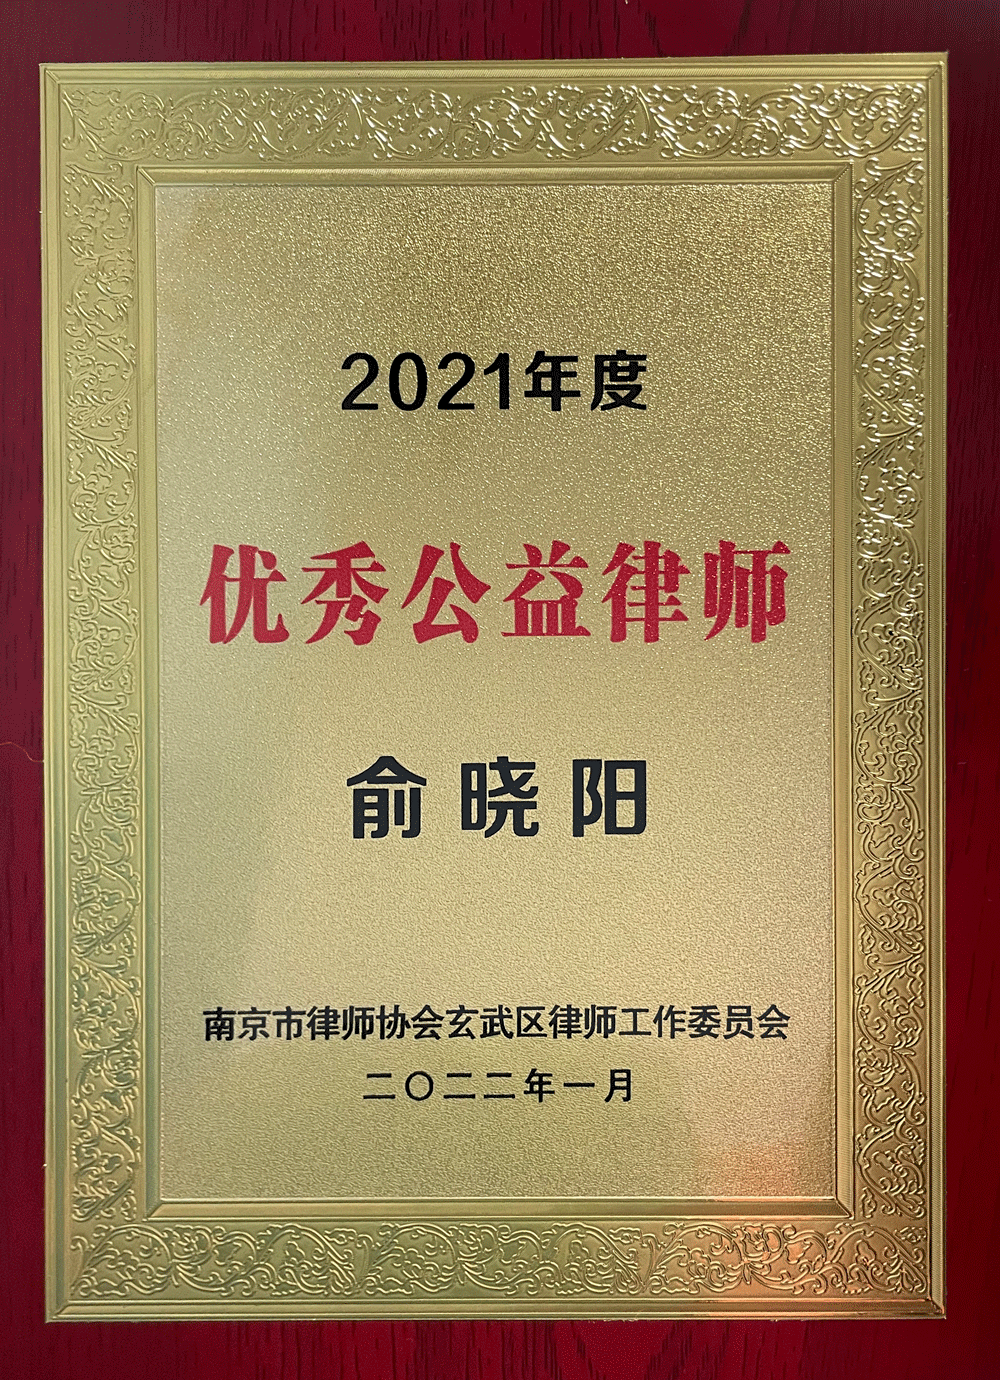 【新闻快报】俞晓阳律师 荣获“南京市玄武区2021年度优秀公益律师”